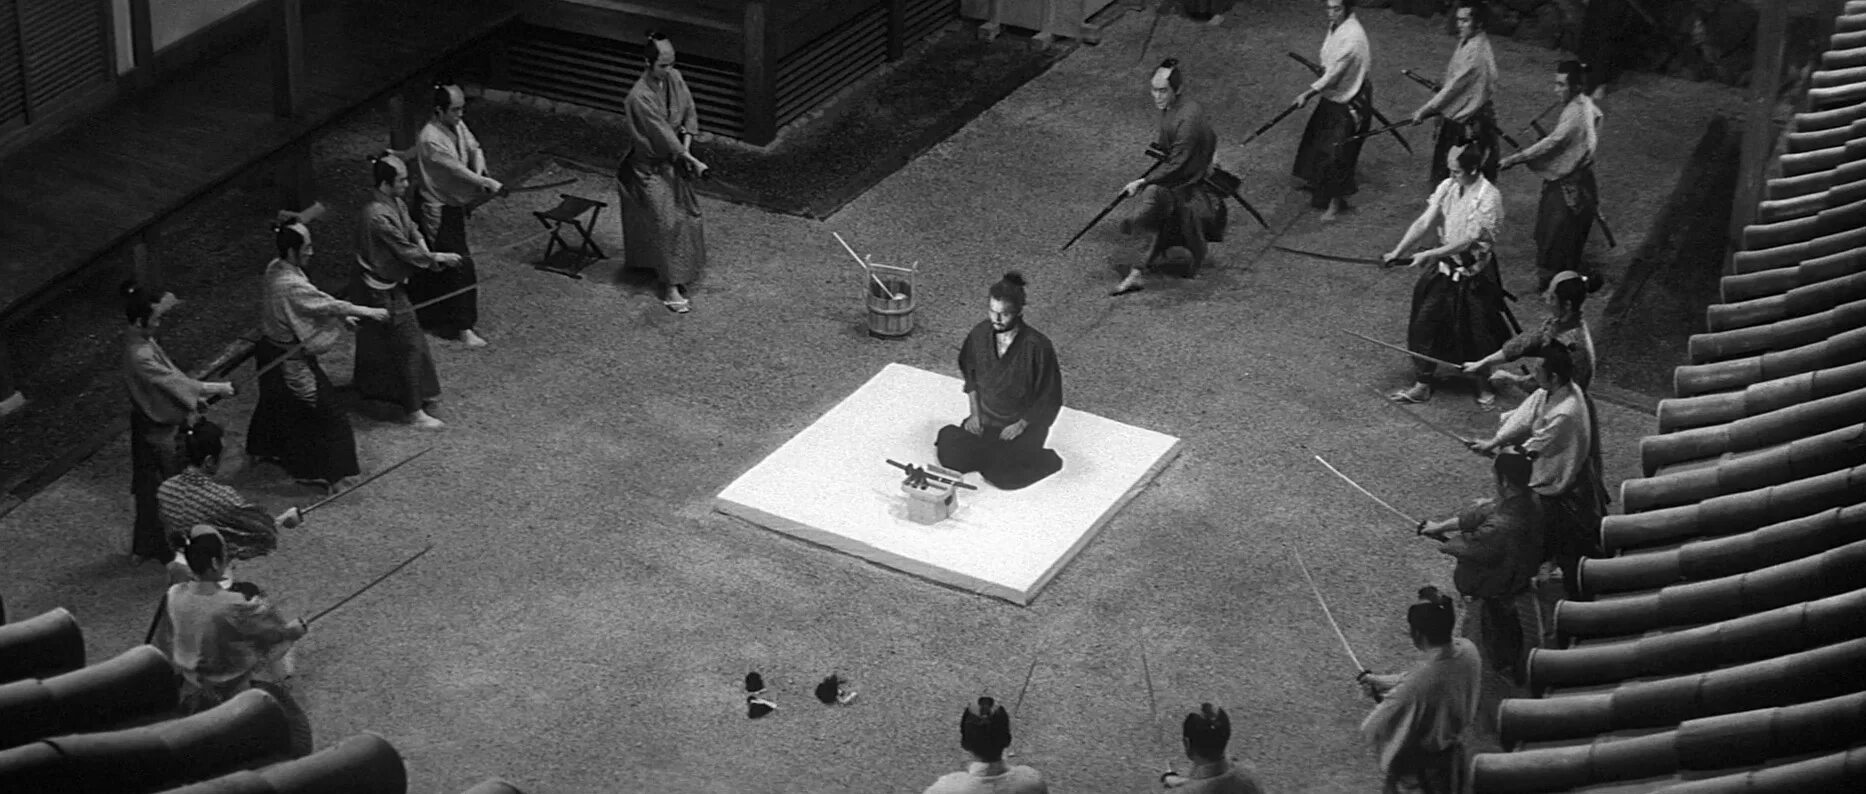 Seppuku (1962, Масаки Кобаяси). Ксанни банни кружок харакири без блюра